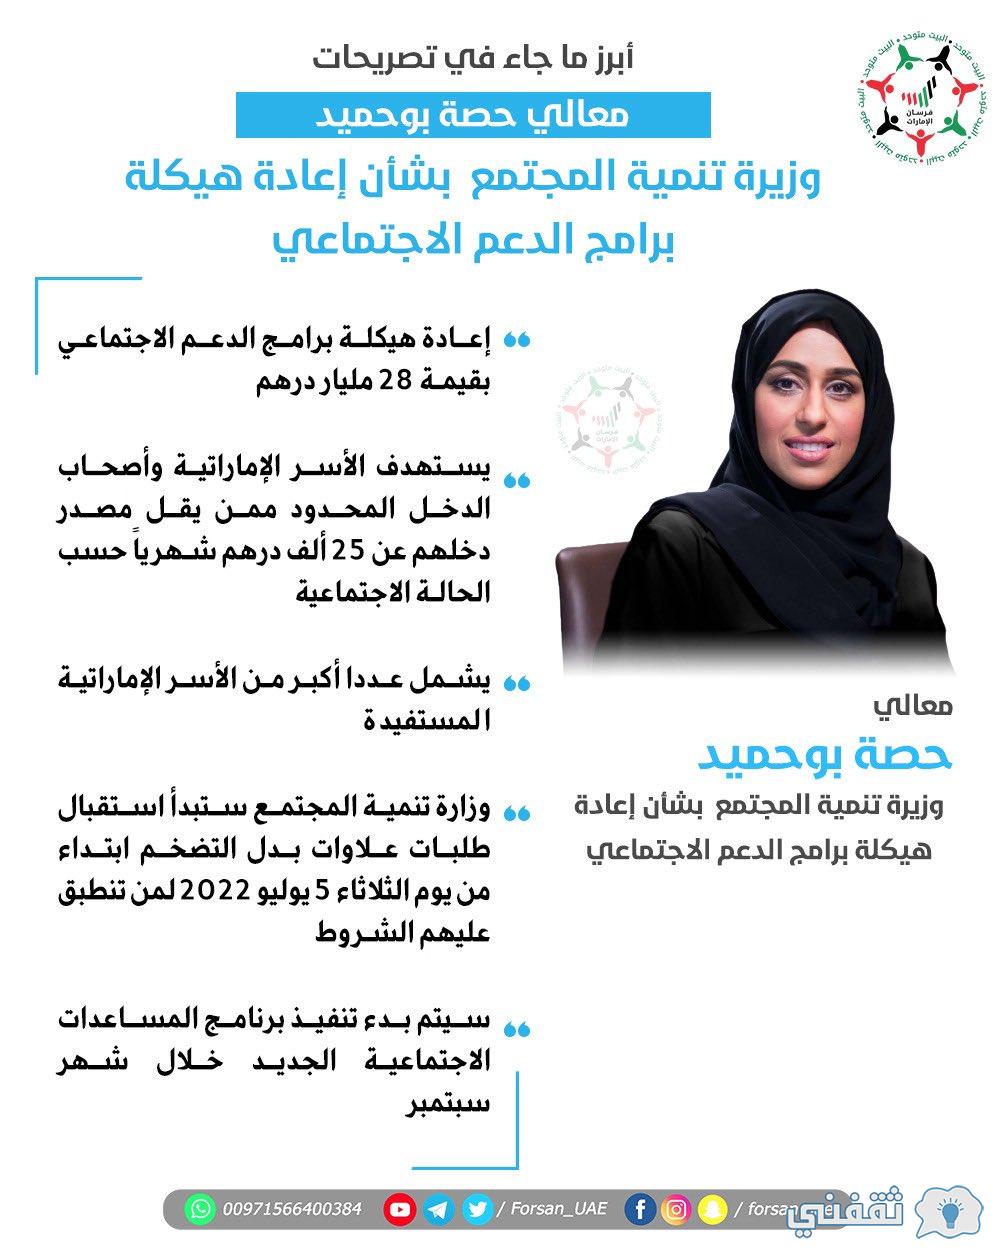 mocd.gov.ae فخامة حاكم الإمارات 2022 تسجيل بدل التضخم لوزارة تنمية المجتمع الإماراتي برقم الهوية